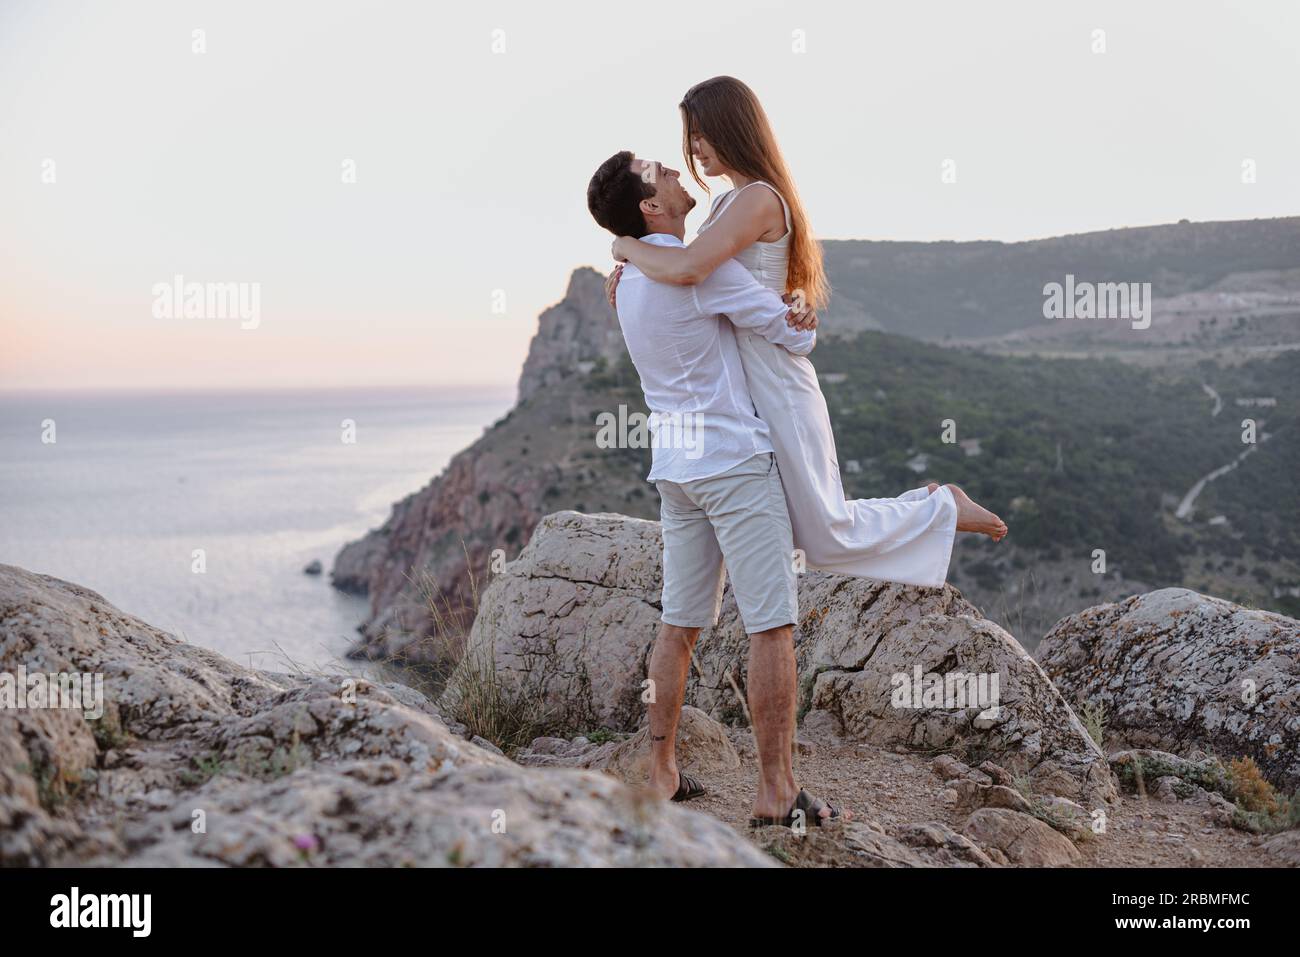 Ein hübsches, junges, liebevolles Paar von nahöstlicher Erscheinung und eine weiße Frau umarmt und küsst sich bei Sonnenaufgang. Outdoor-Liebesgeschichte. Stockfoto